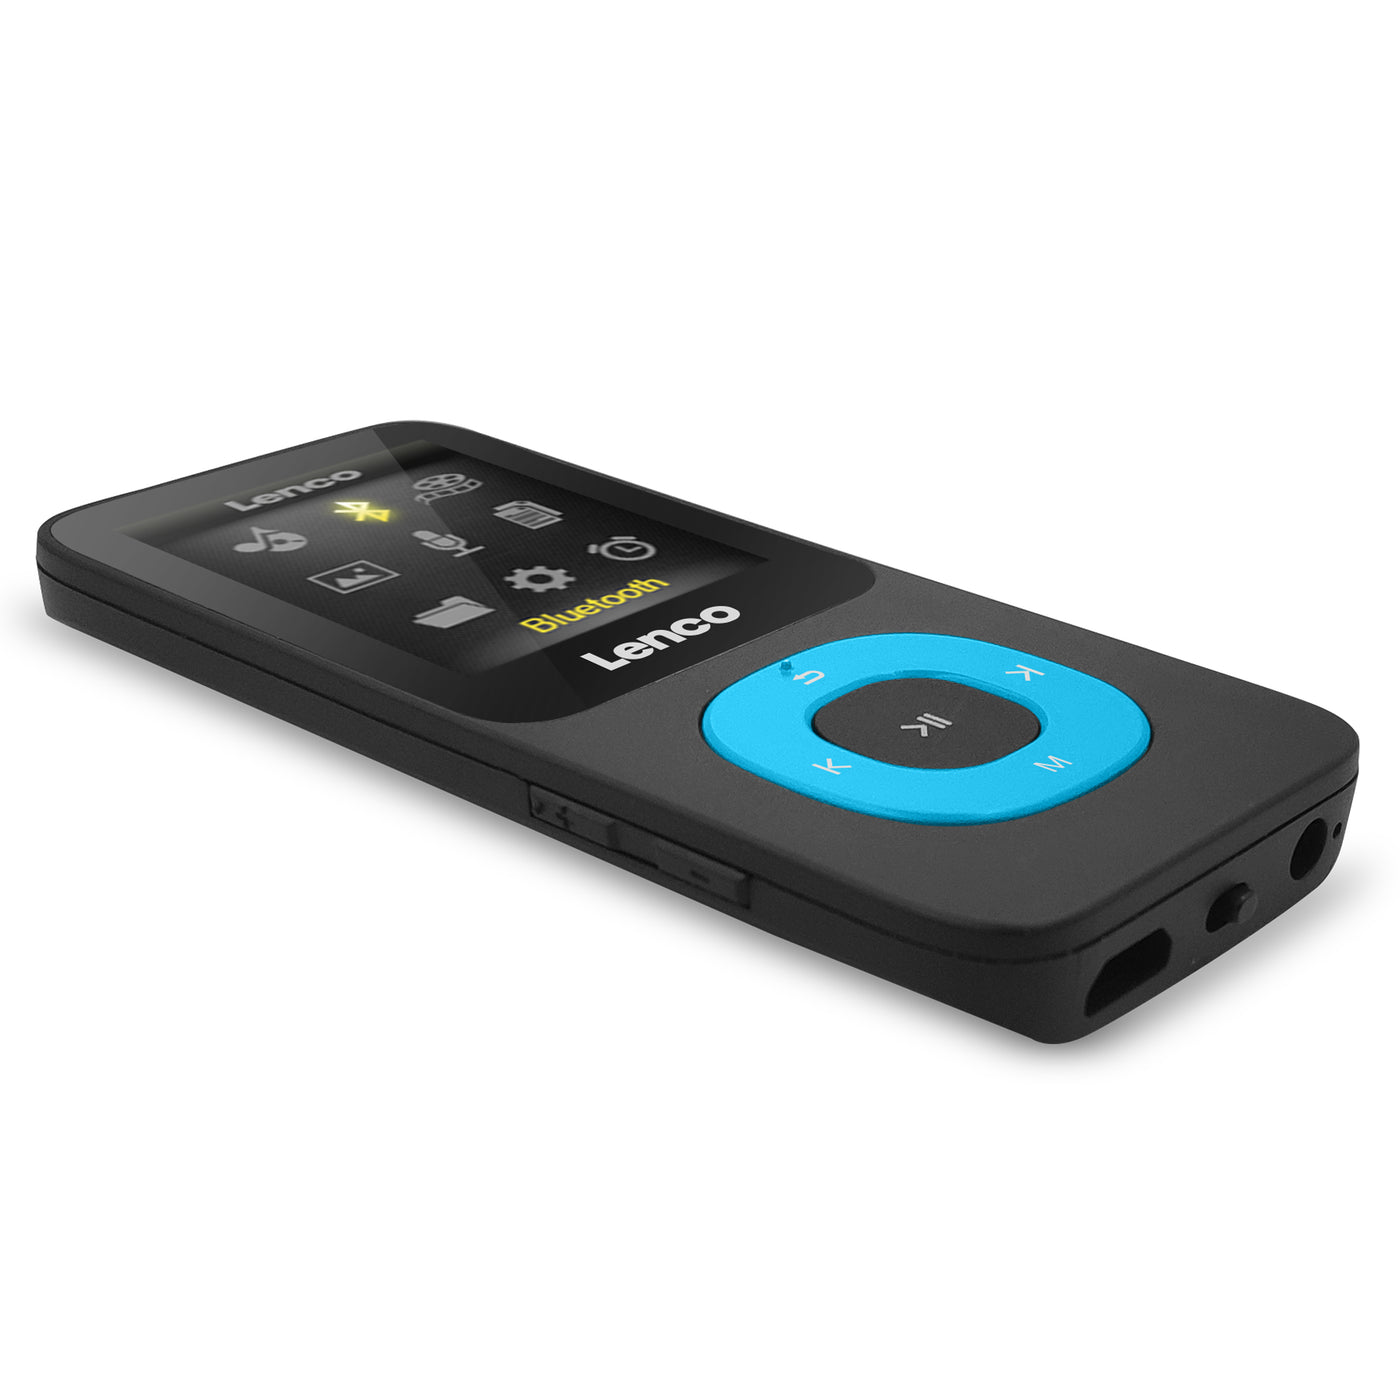 Lenco Xemio-769BU - Lecteur MP3/MP4 avec Bluetooth® et carte micro SD de 8 Go - Bleu